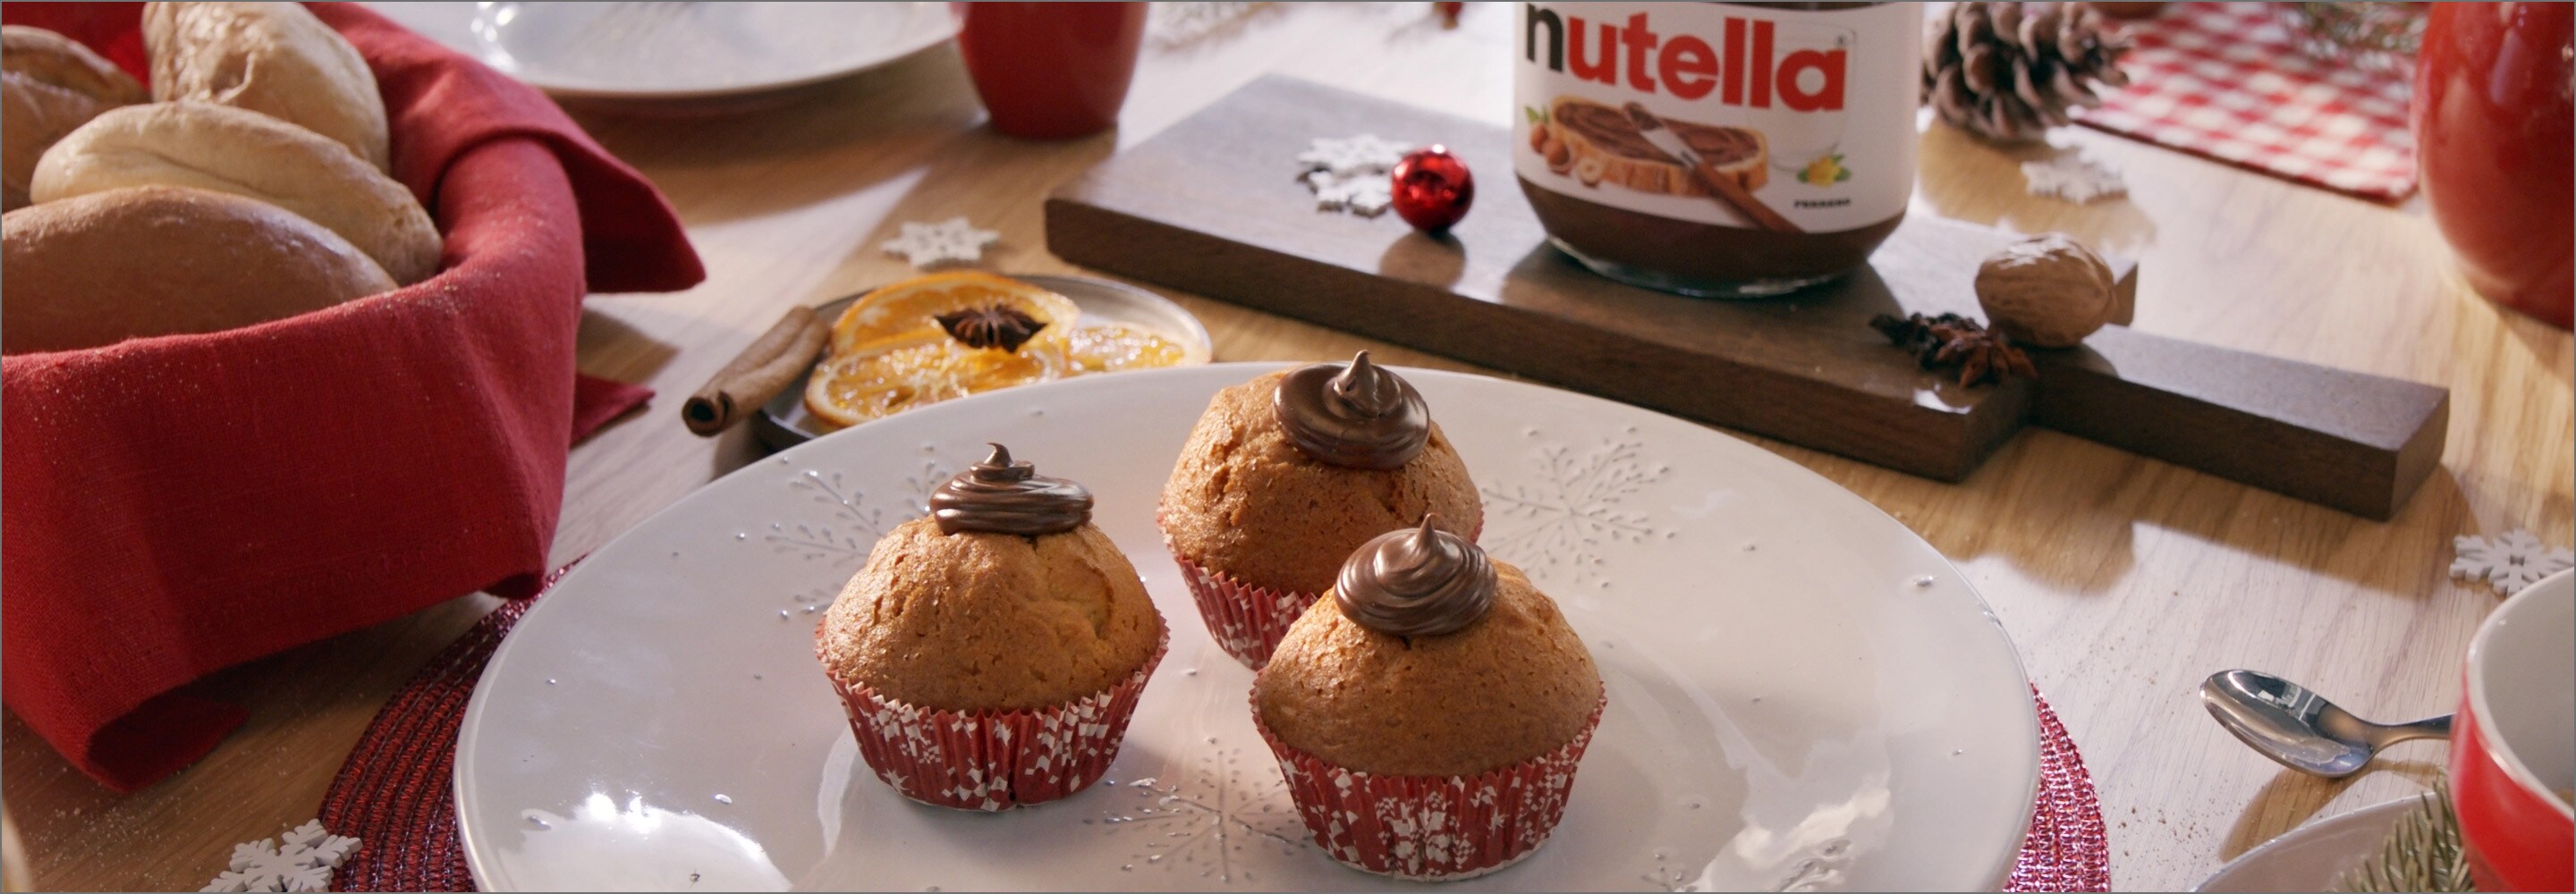 Receitas de Natal: ideias de muffins, biscoitos e massa folhada  | Nutella®